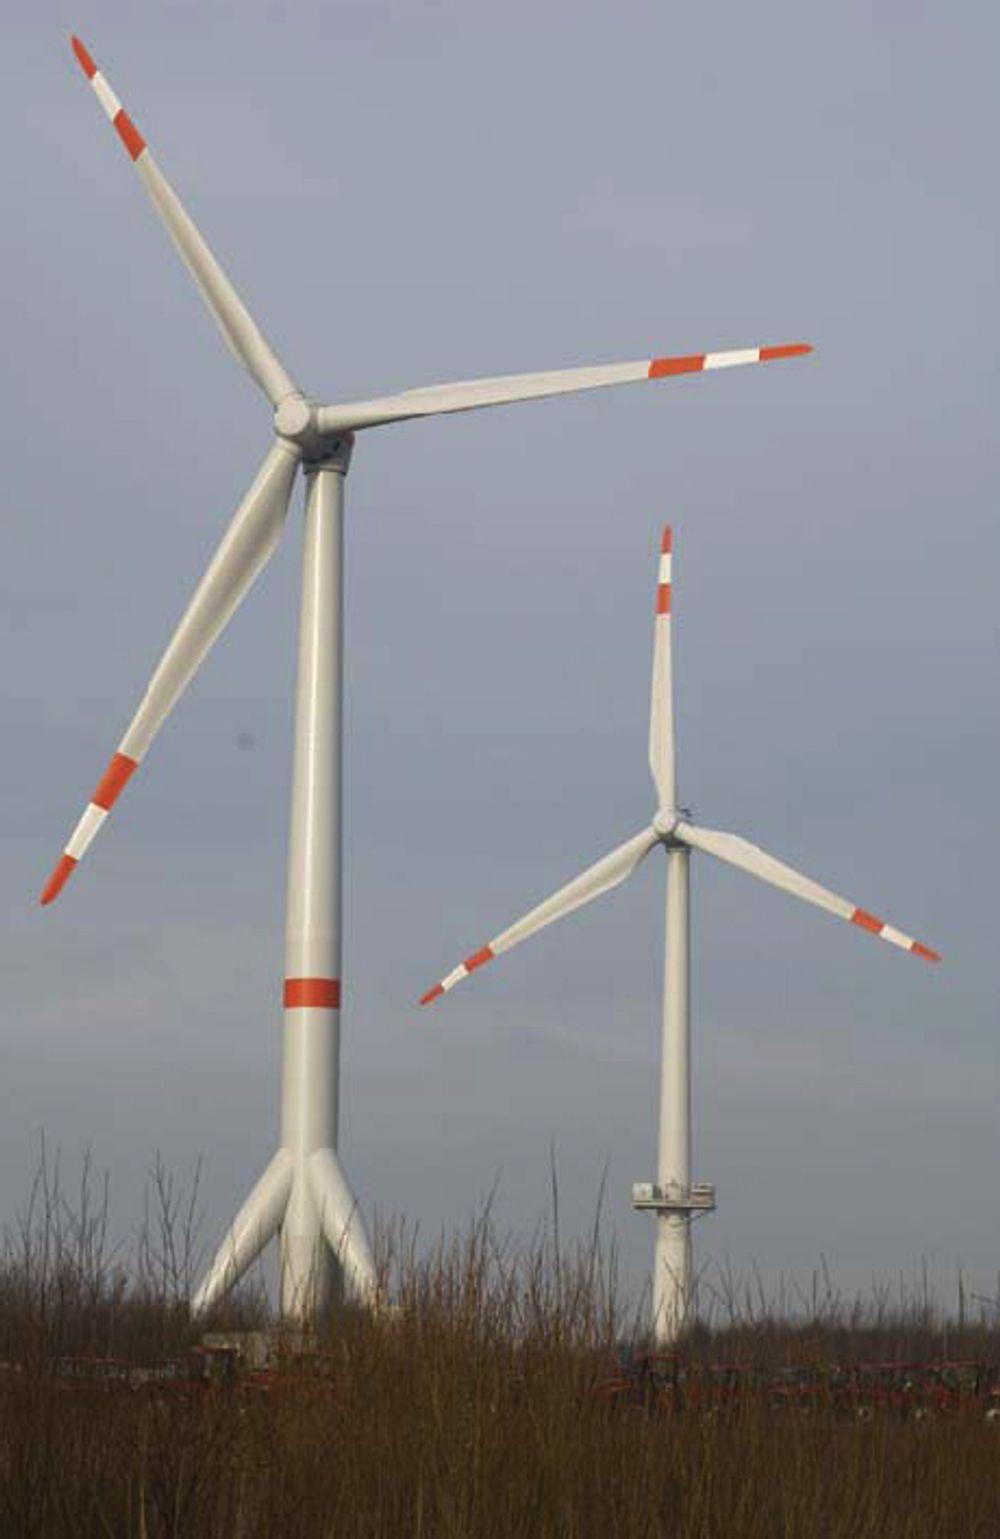 KRAFTIG: Slik ser Multibrid M5000 ut. De to vindturbinene på bildet er prototyper av havturbinene. Mot bakken ser du stålfundamentene, som skal lages ved Aker Kværner Verdal.